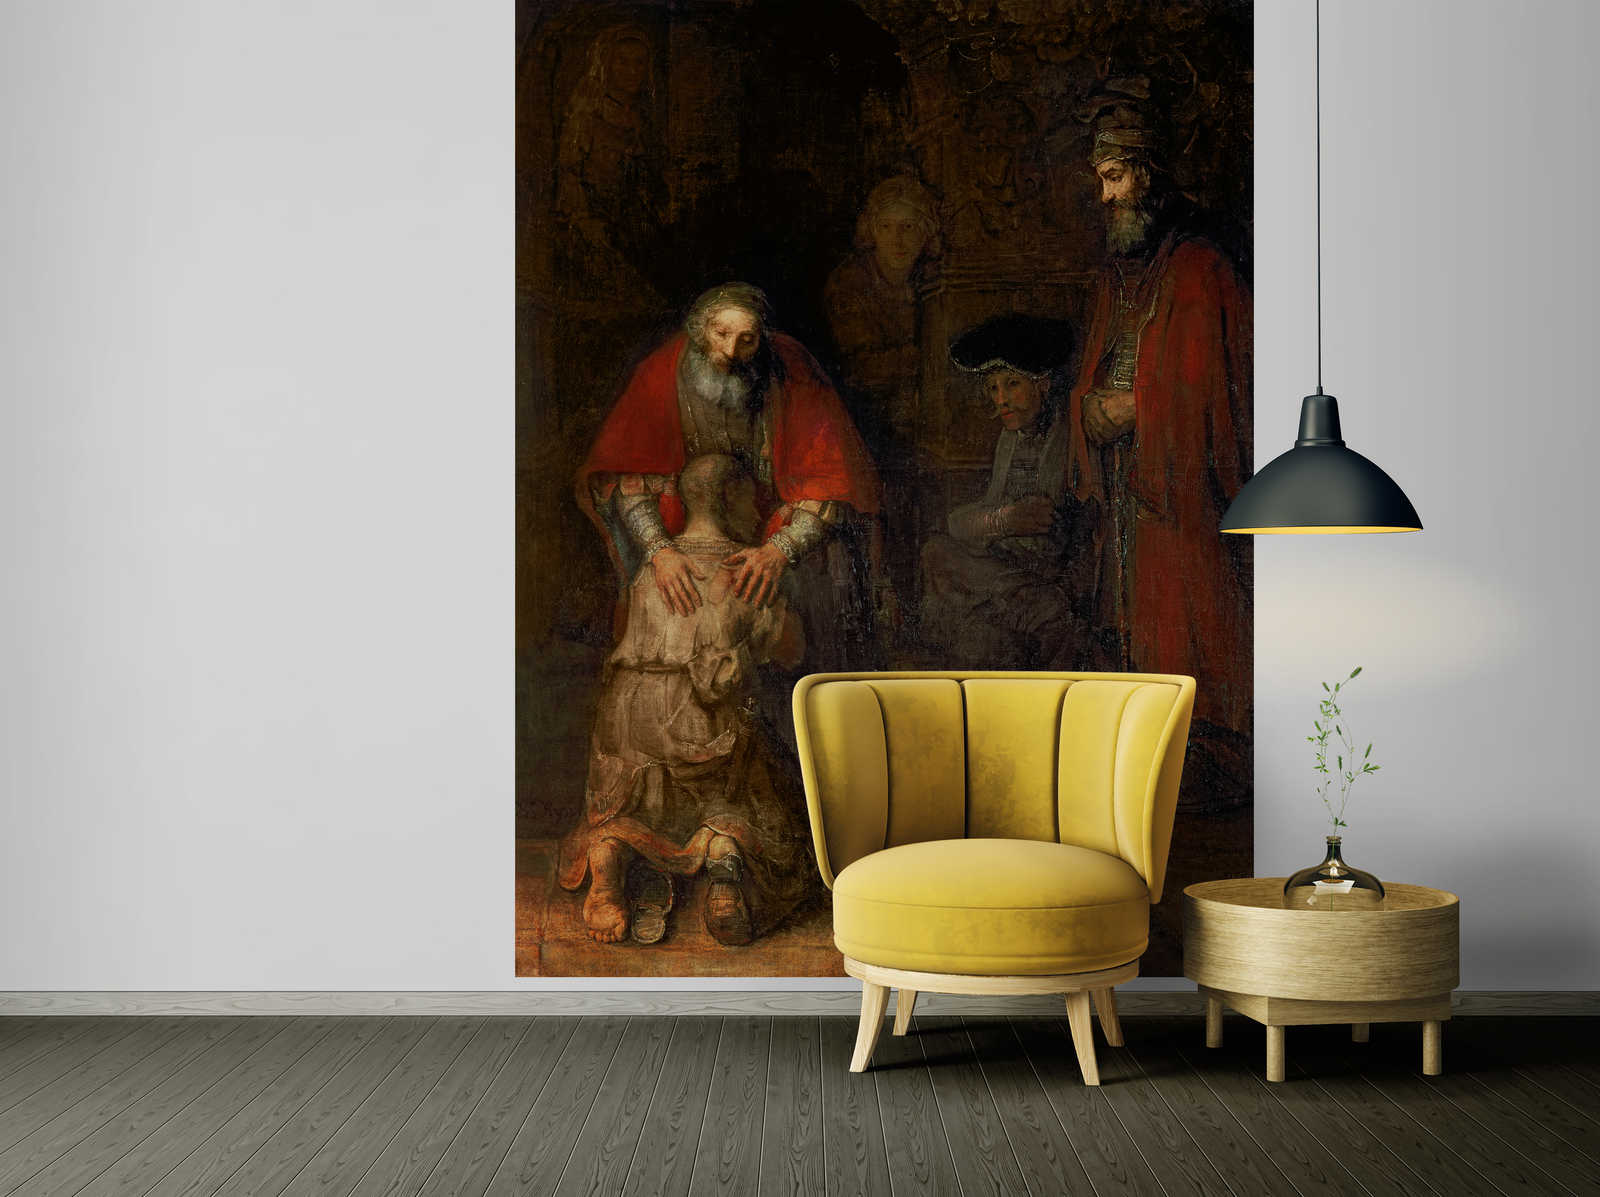             De terugkeer van de verloren zoon" muurschildering van Rembrandt van Rijn
        